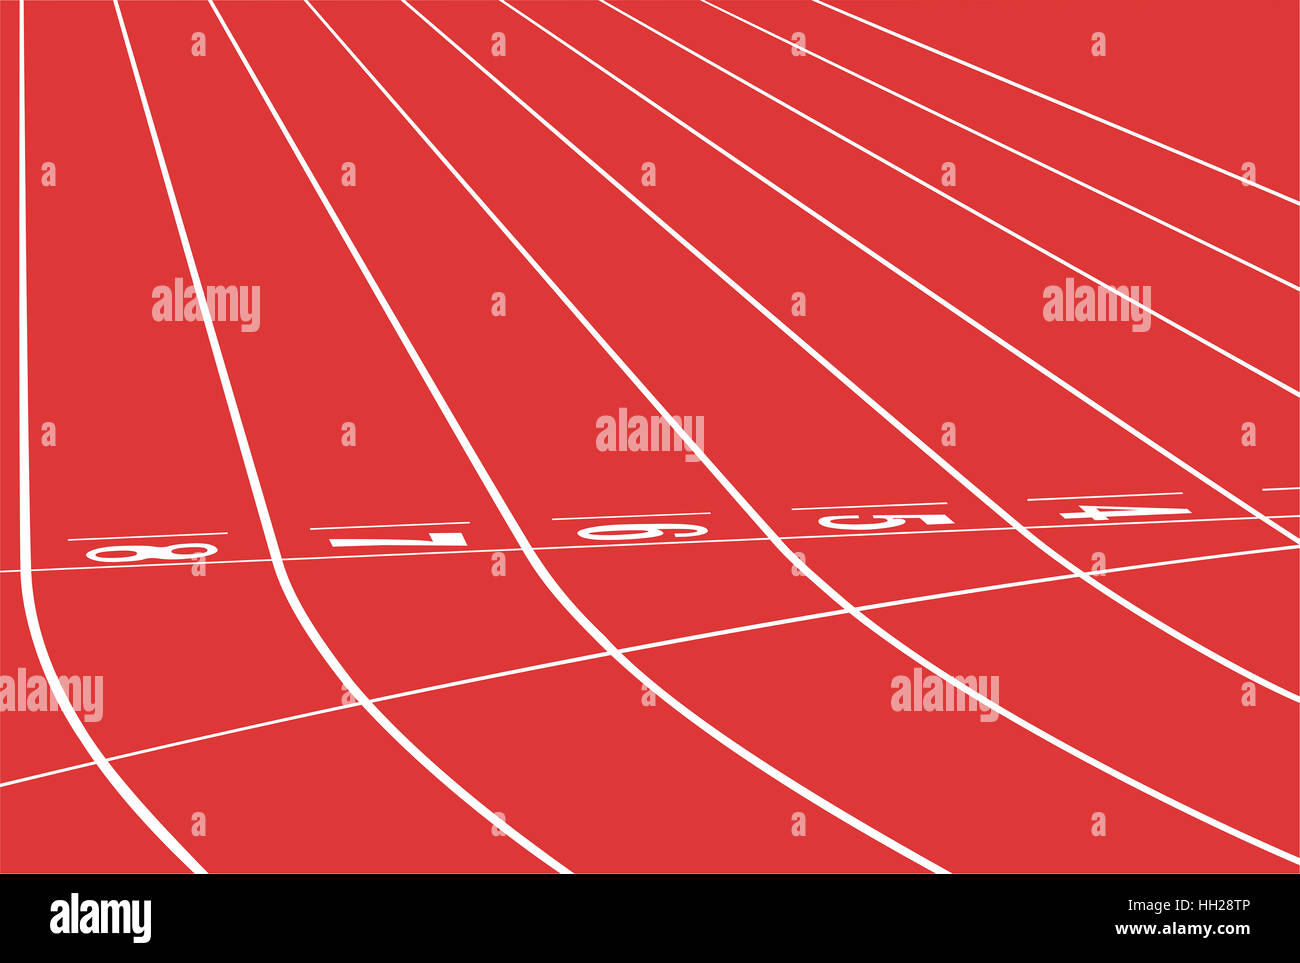 red track running sports stadium finish line Stock Photo